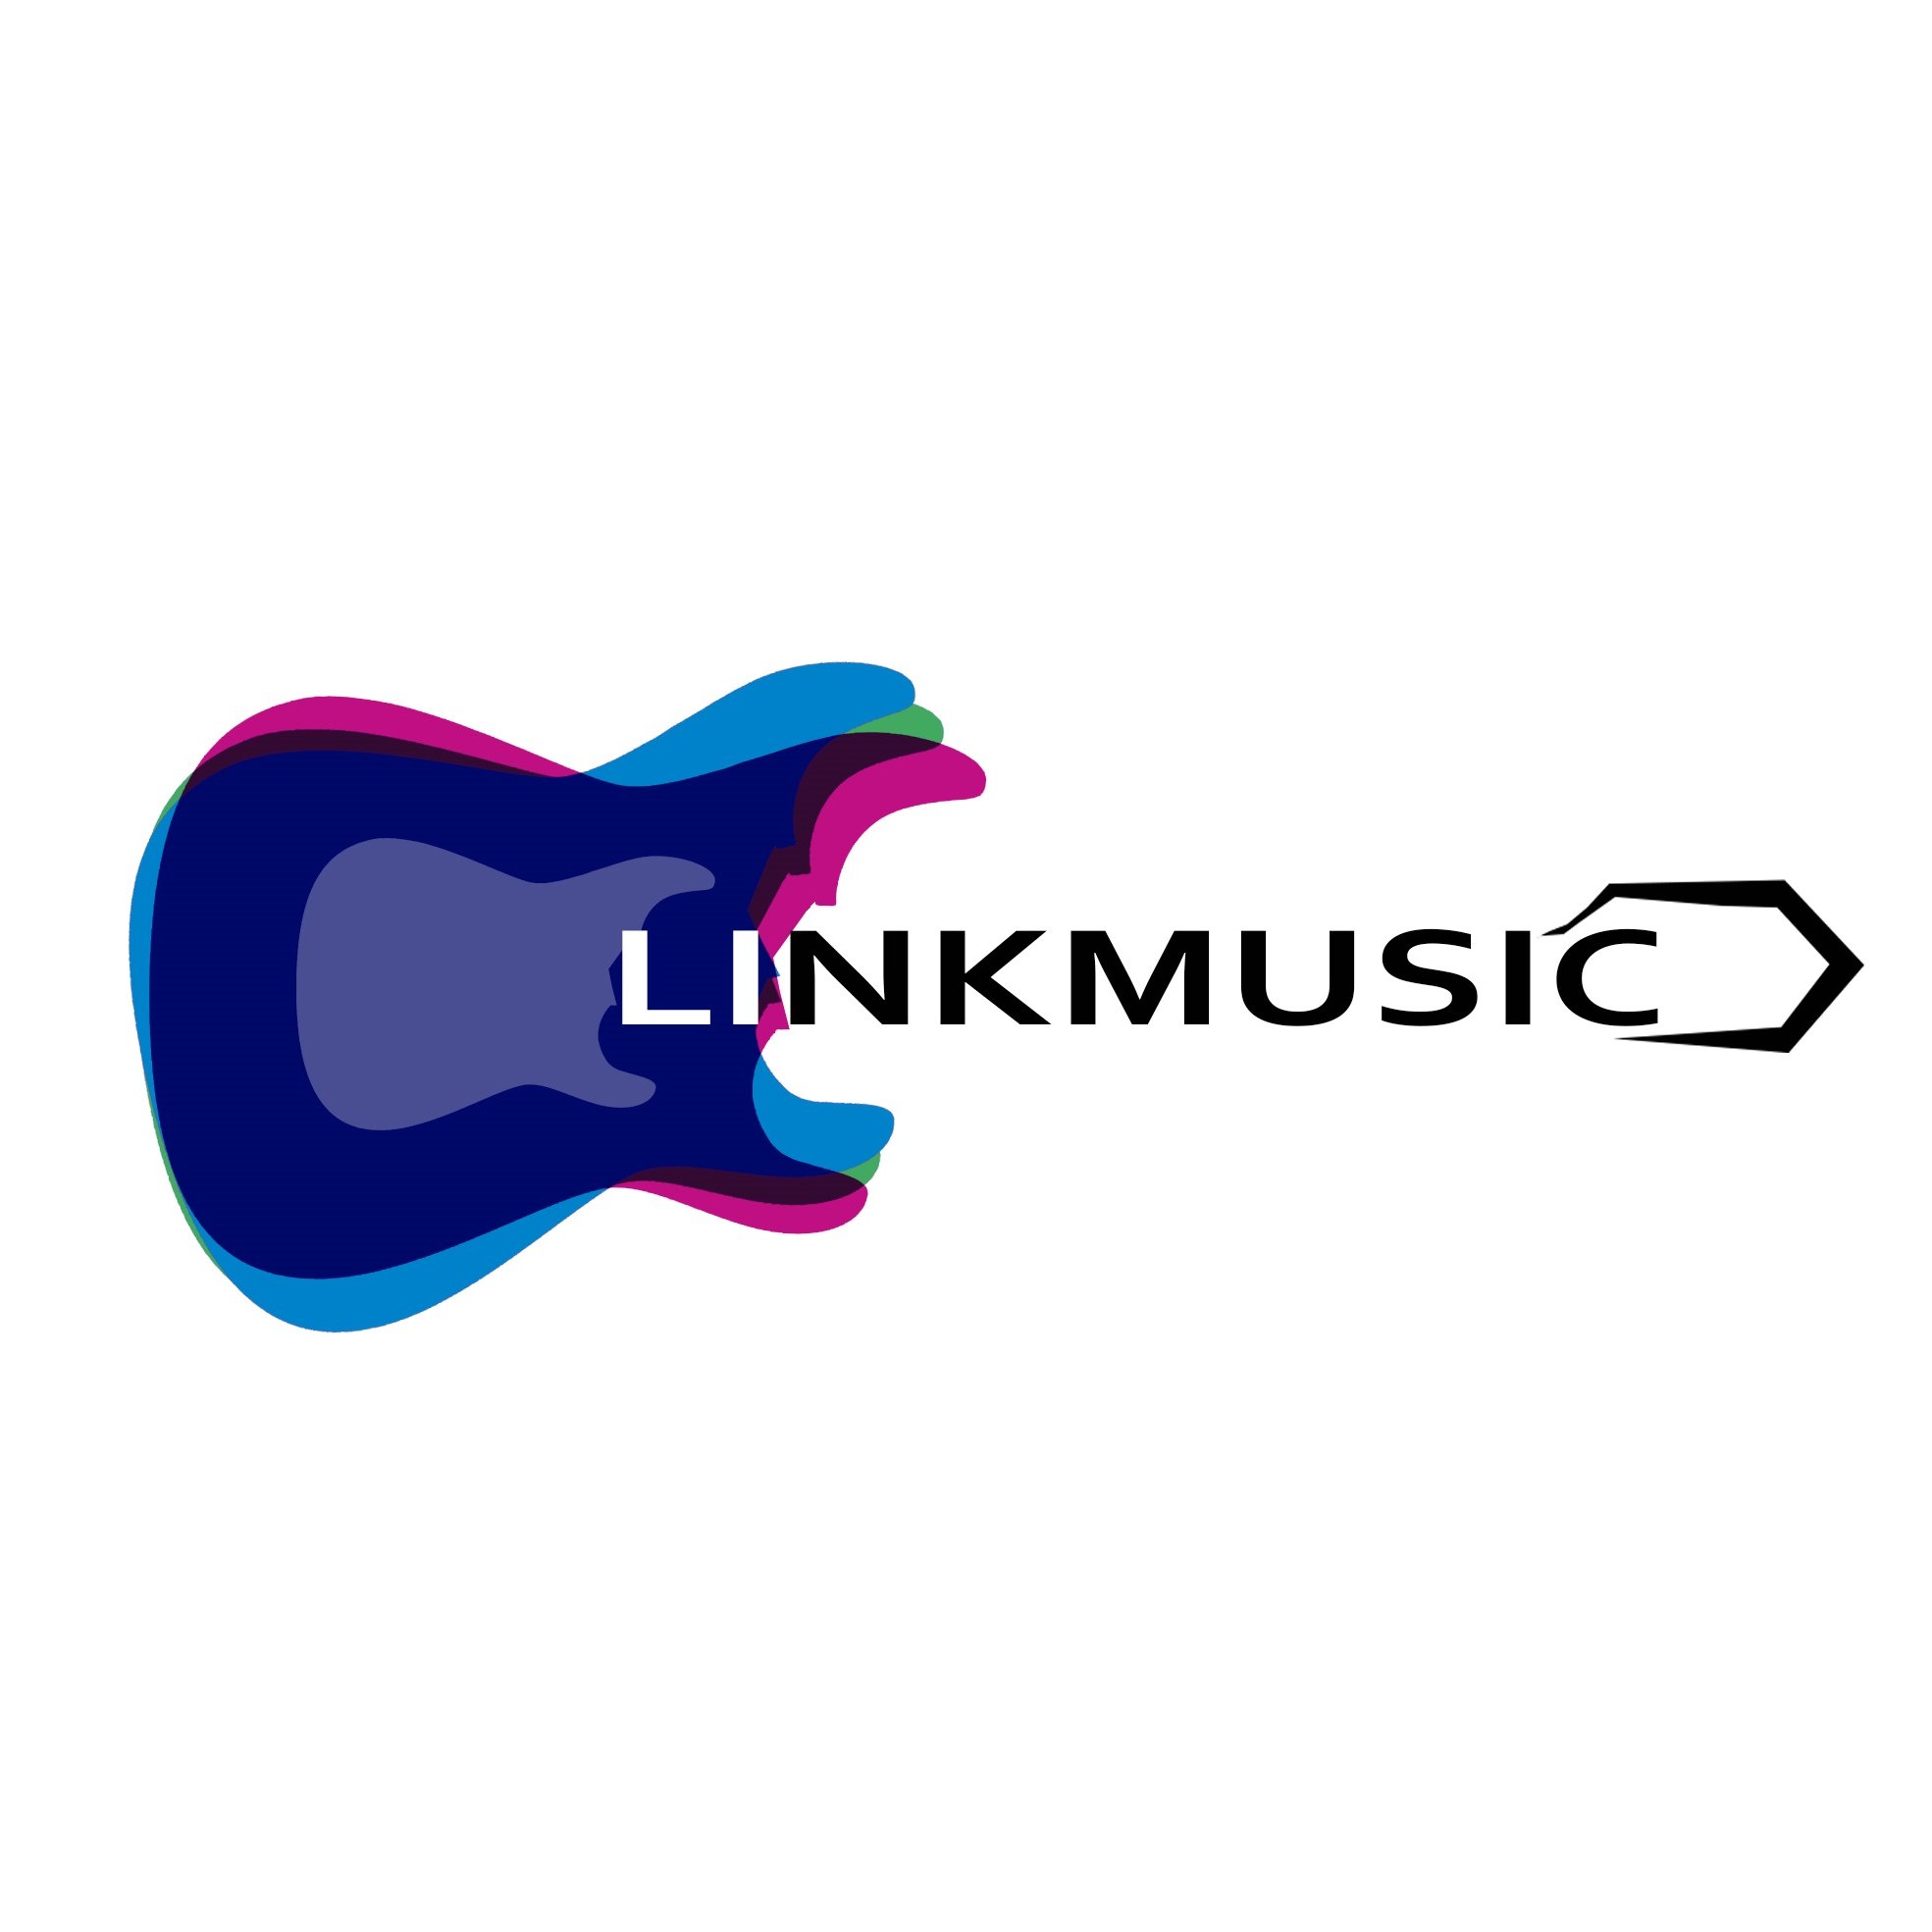 ¡Movemos la música en vivo! Crea gratis tu perfil de músico en una plataforma especializada en música.  Consigue más conciertos y promociona tu música.